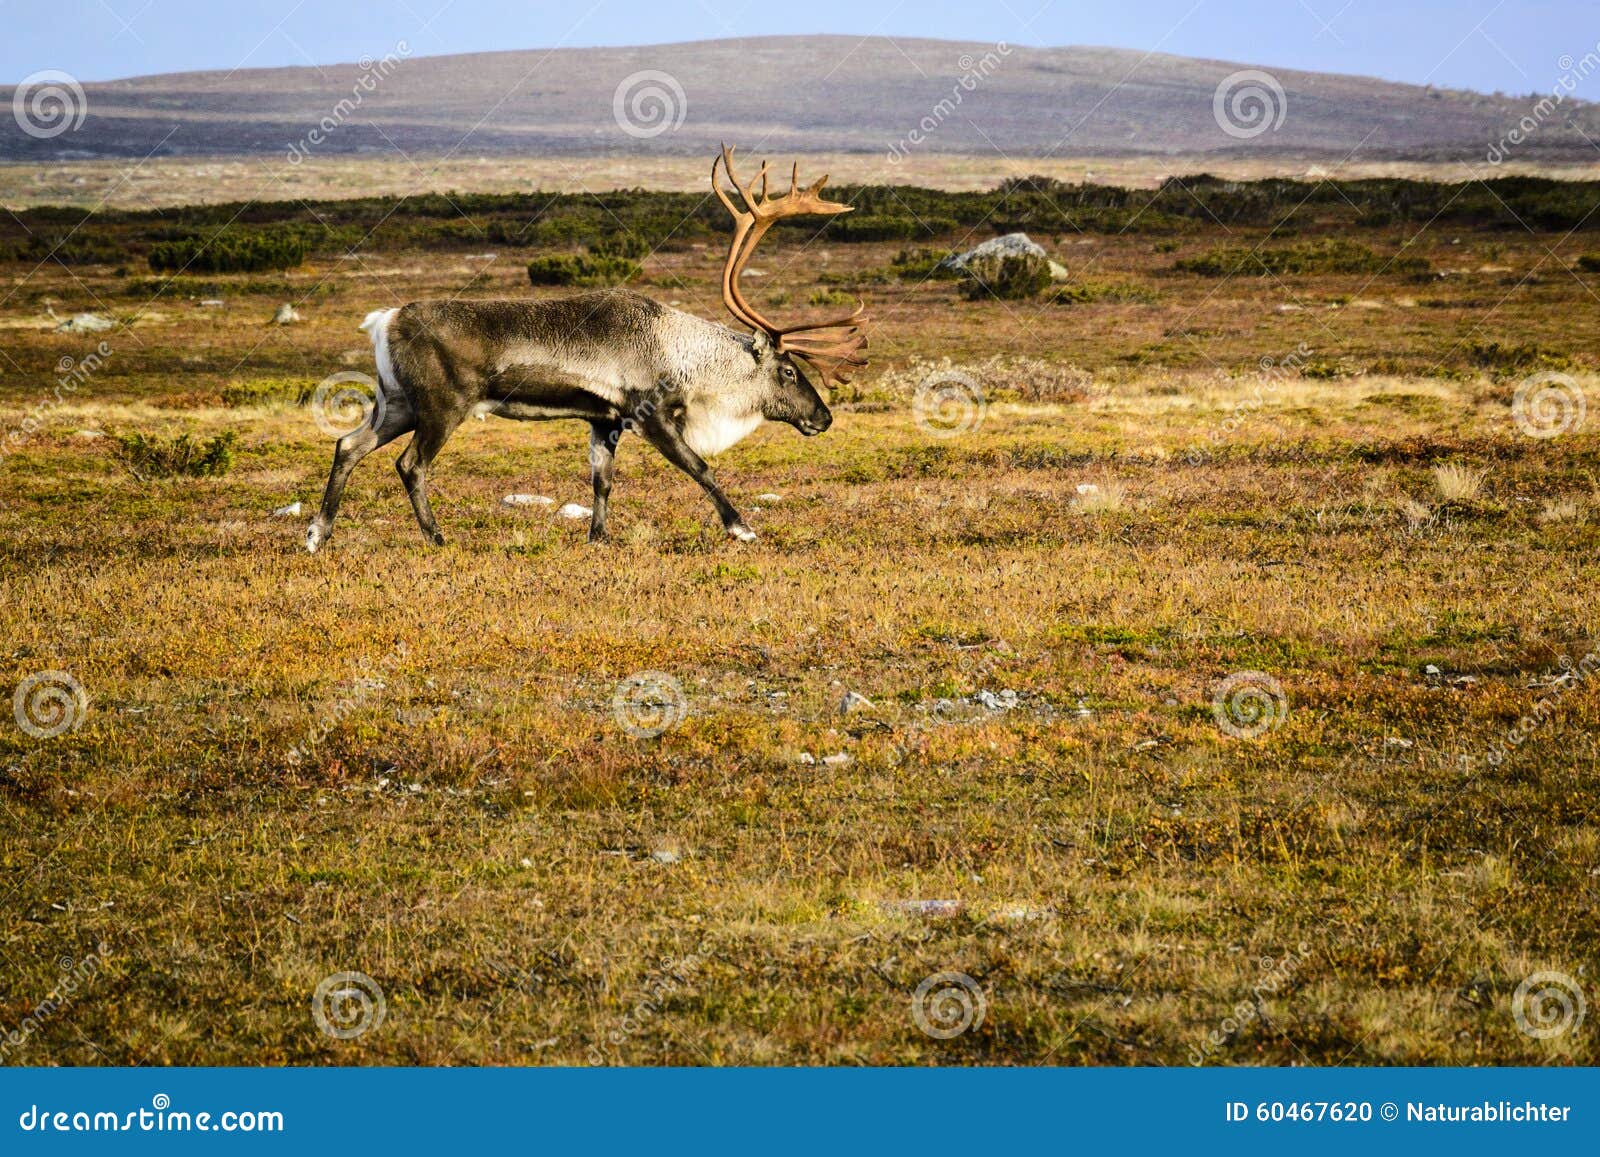 reindeer on tundra